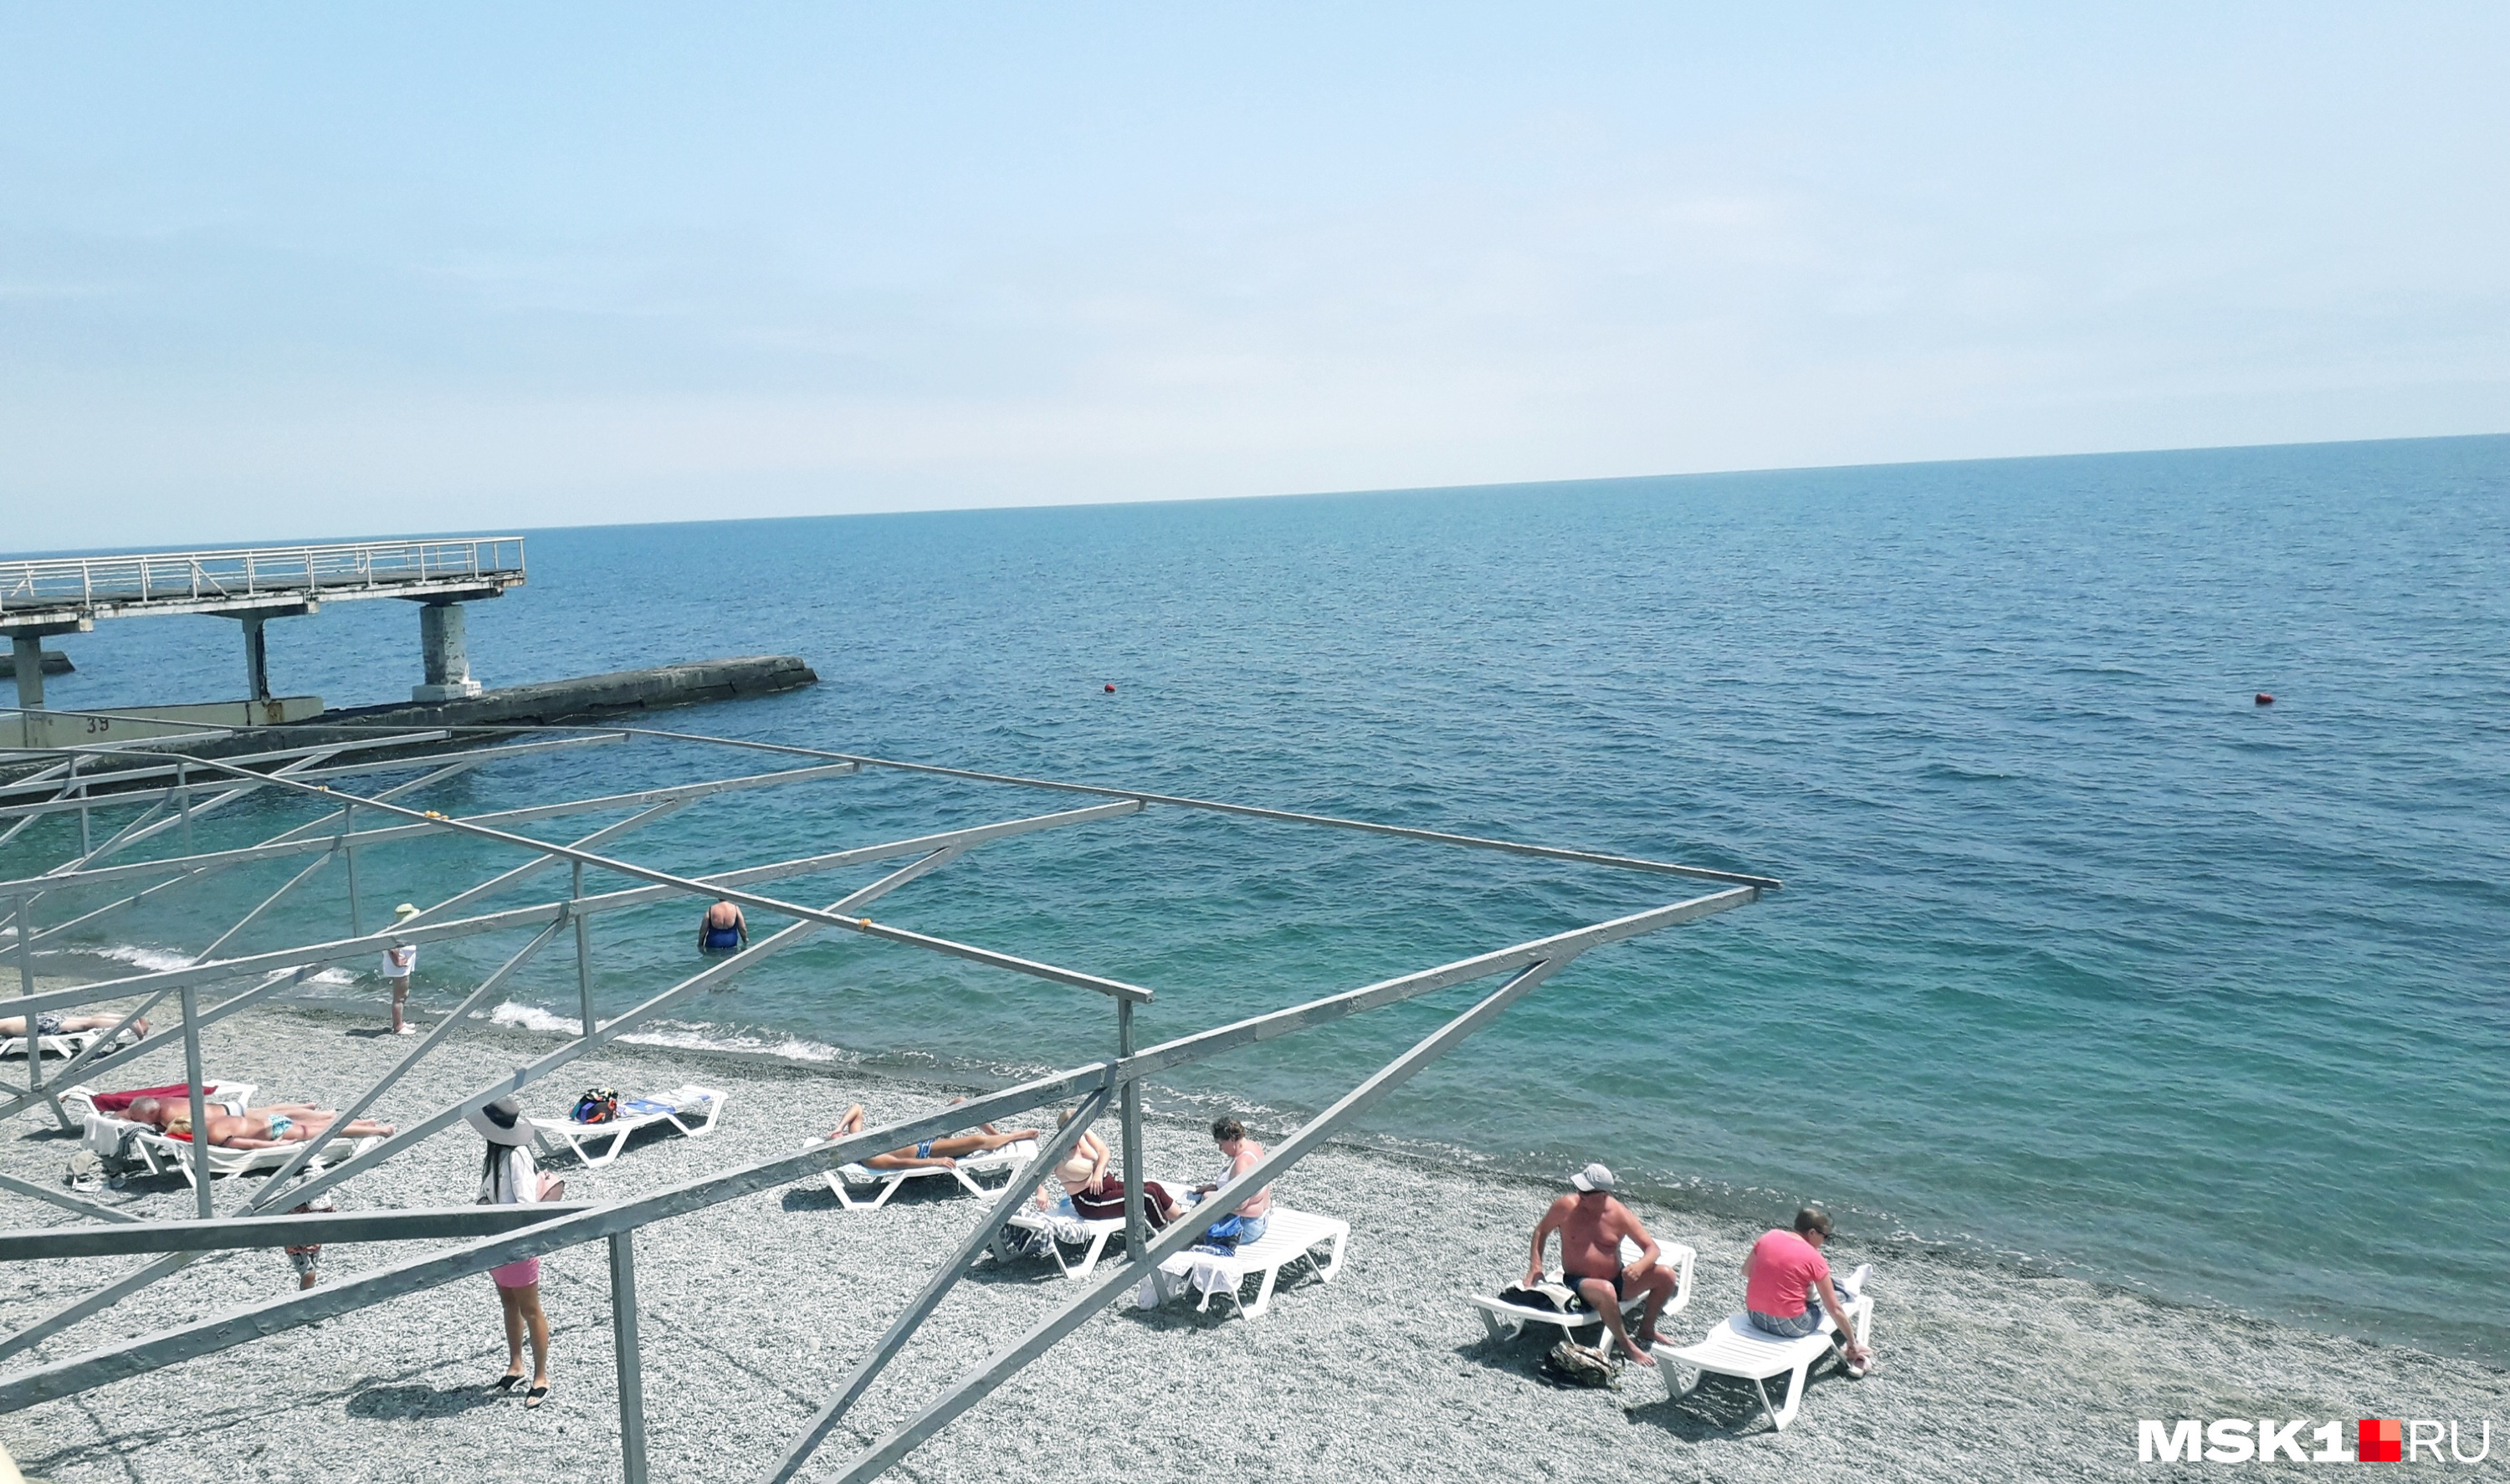 Еще не все крымские пляжи полностью готовы к приему туристов — на многих не натянуты тенты, не сдается в прокат пляжный инвентарь